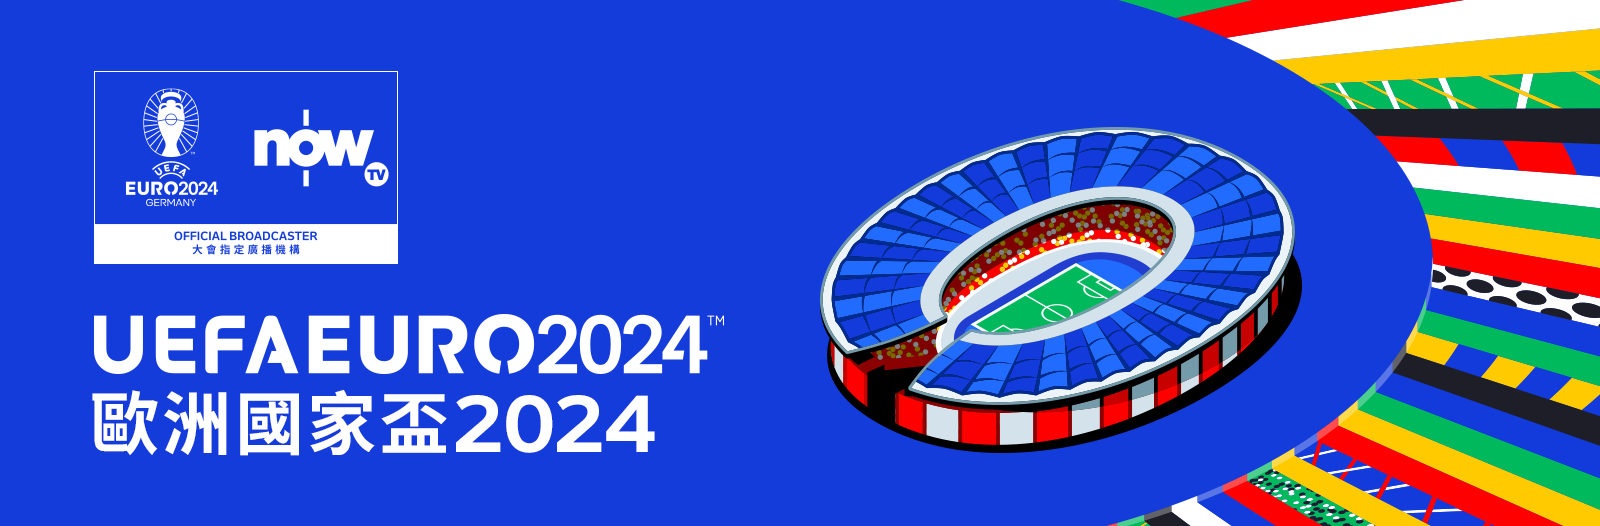 UEFA EURO 2024™ Event Pass